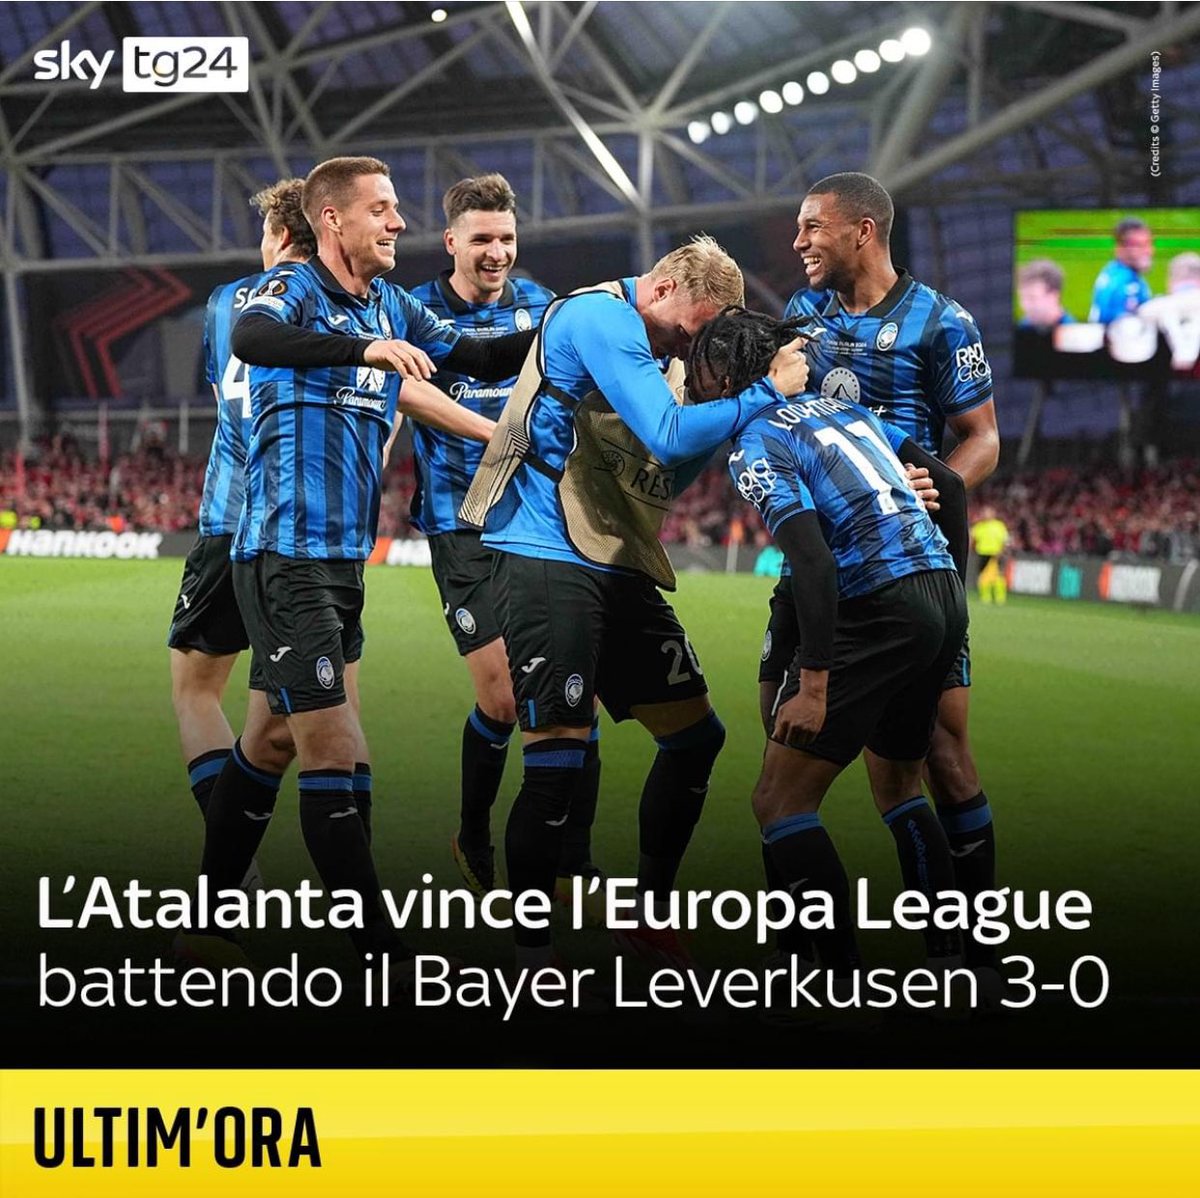 Complimenti all’Atalanta che ha portato in Italia un trofeo prestigioso! 👏🏻 🇮🇹